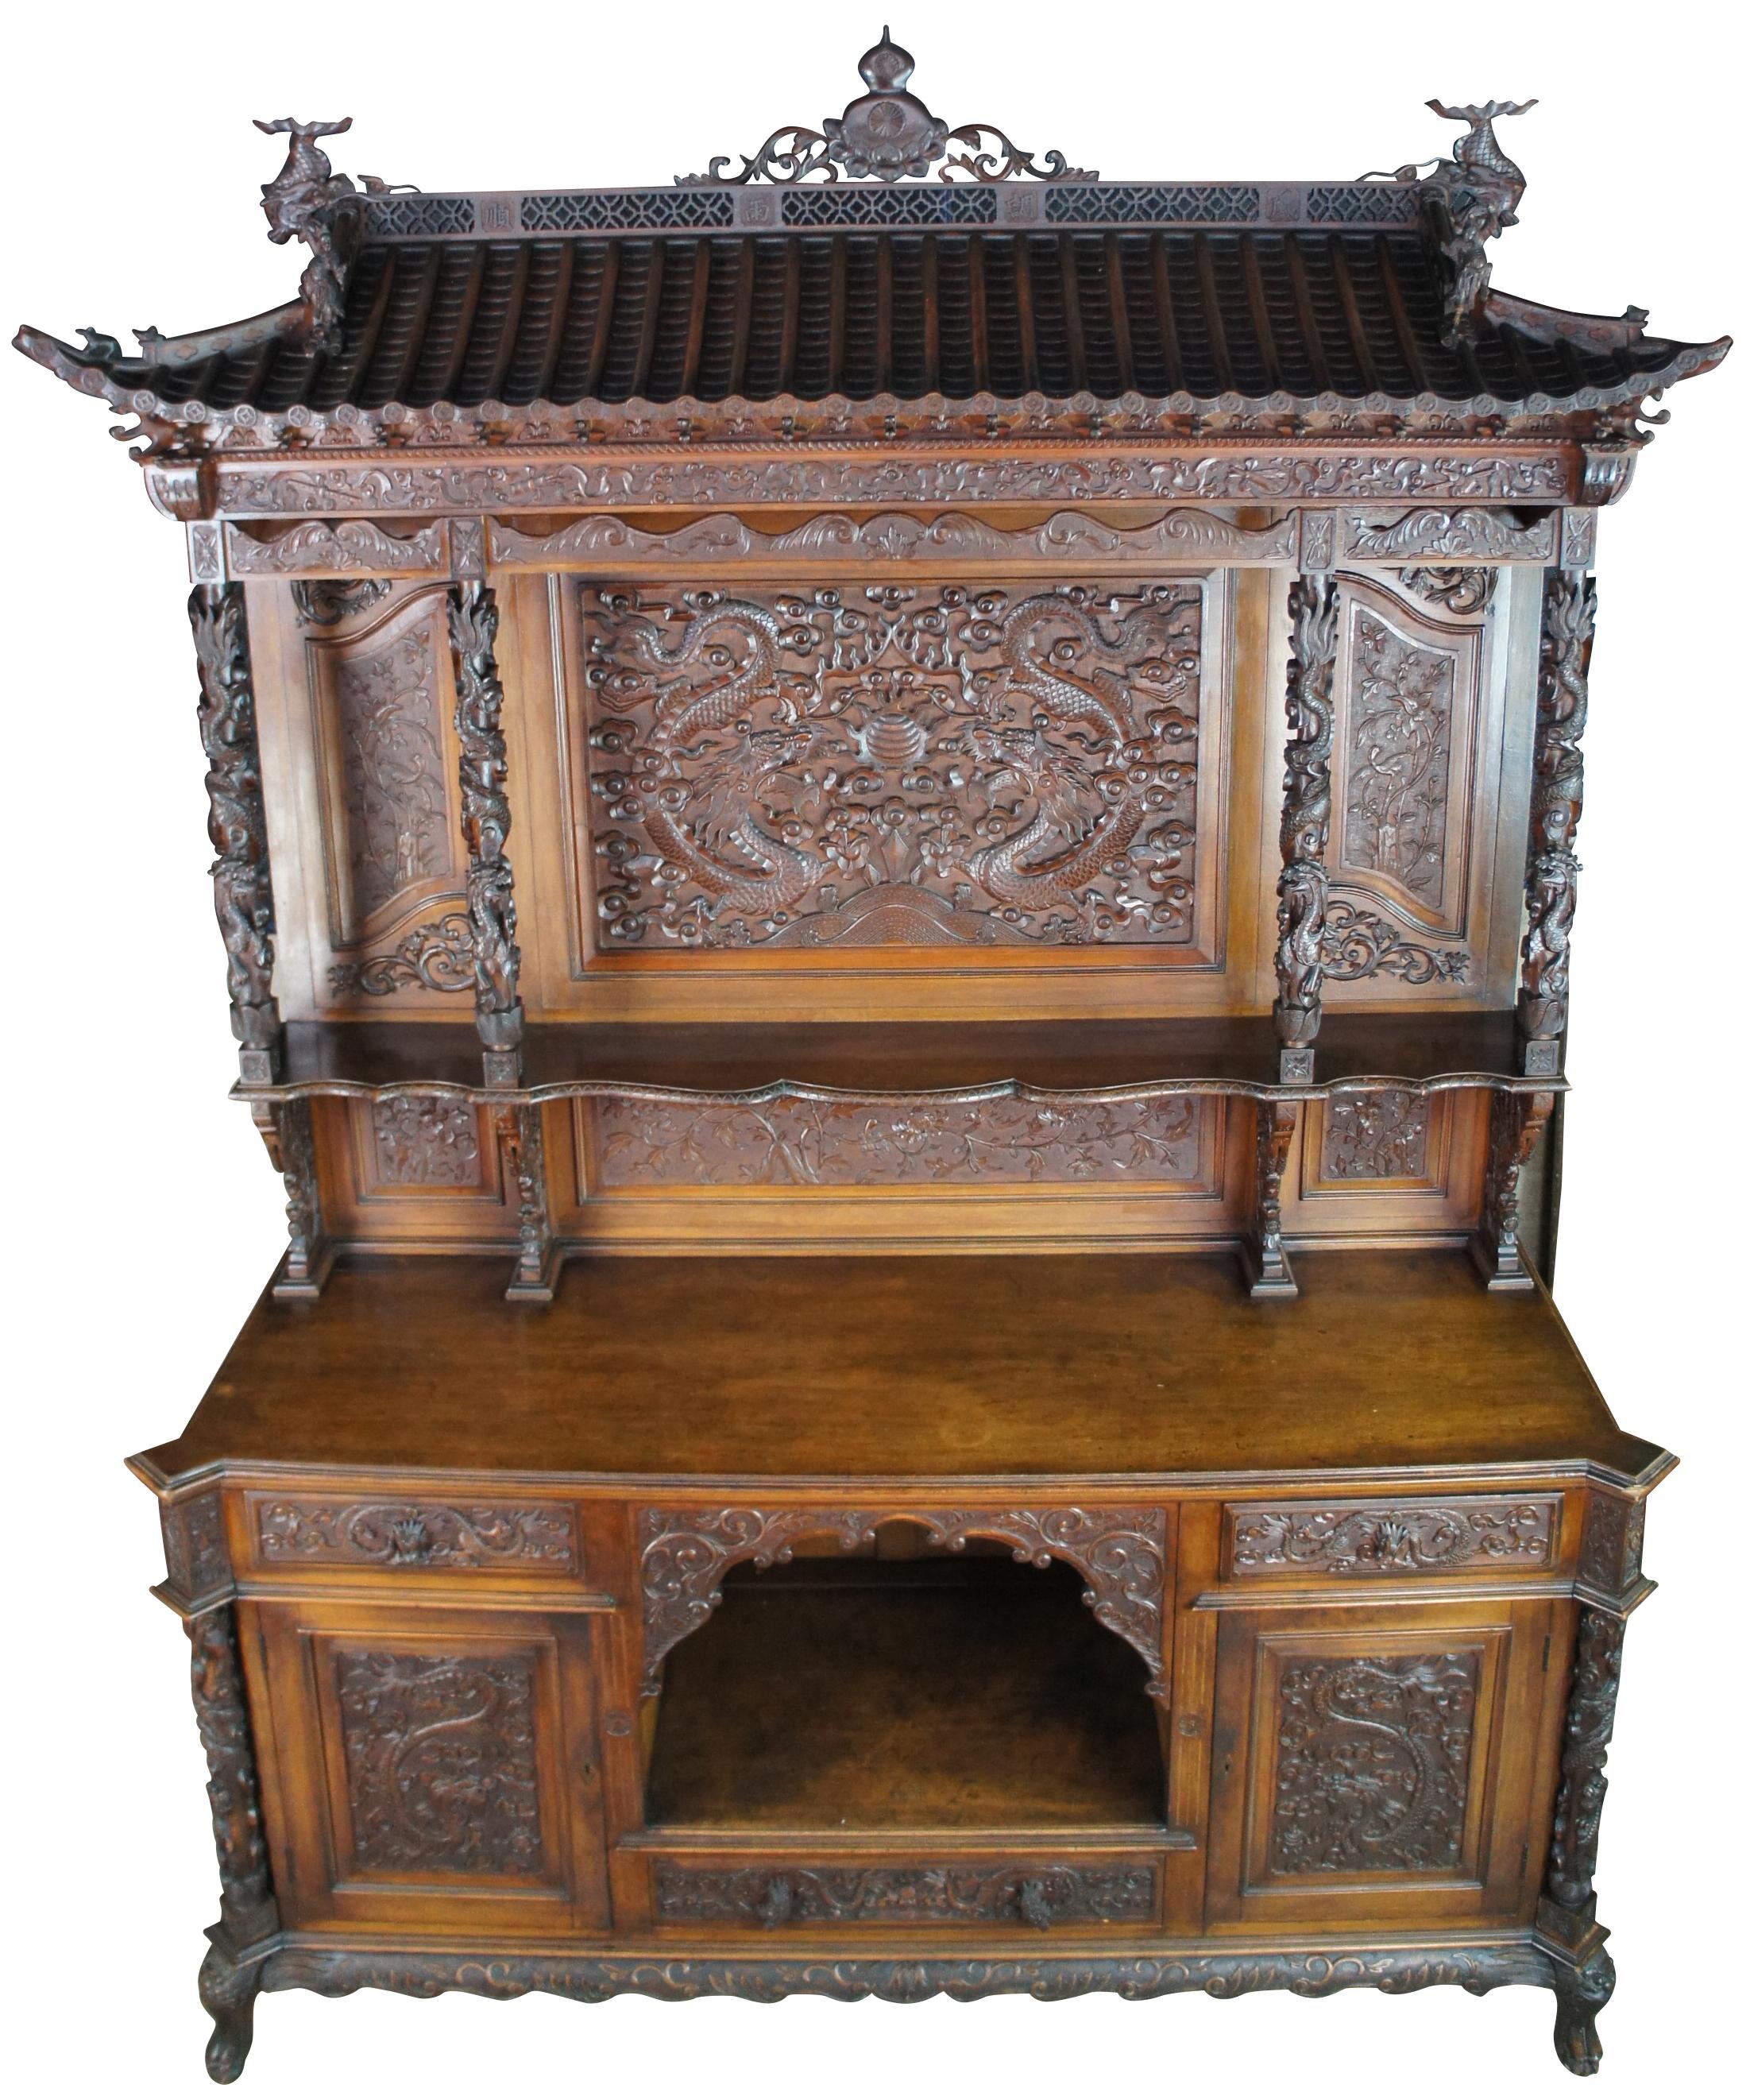 Un ensemble de salle à manger sculpté de style victorien Chinoiserie, vers les années 1880, d'une rareté exceptionnelle. Fabriquée en acajou, elle est ornée d'un dragon chinois en haut-relief sculpté sur toute sa surface. La suite comprend une